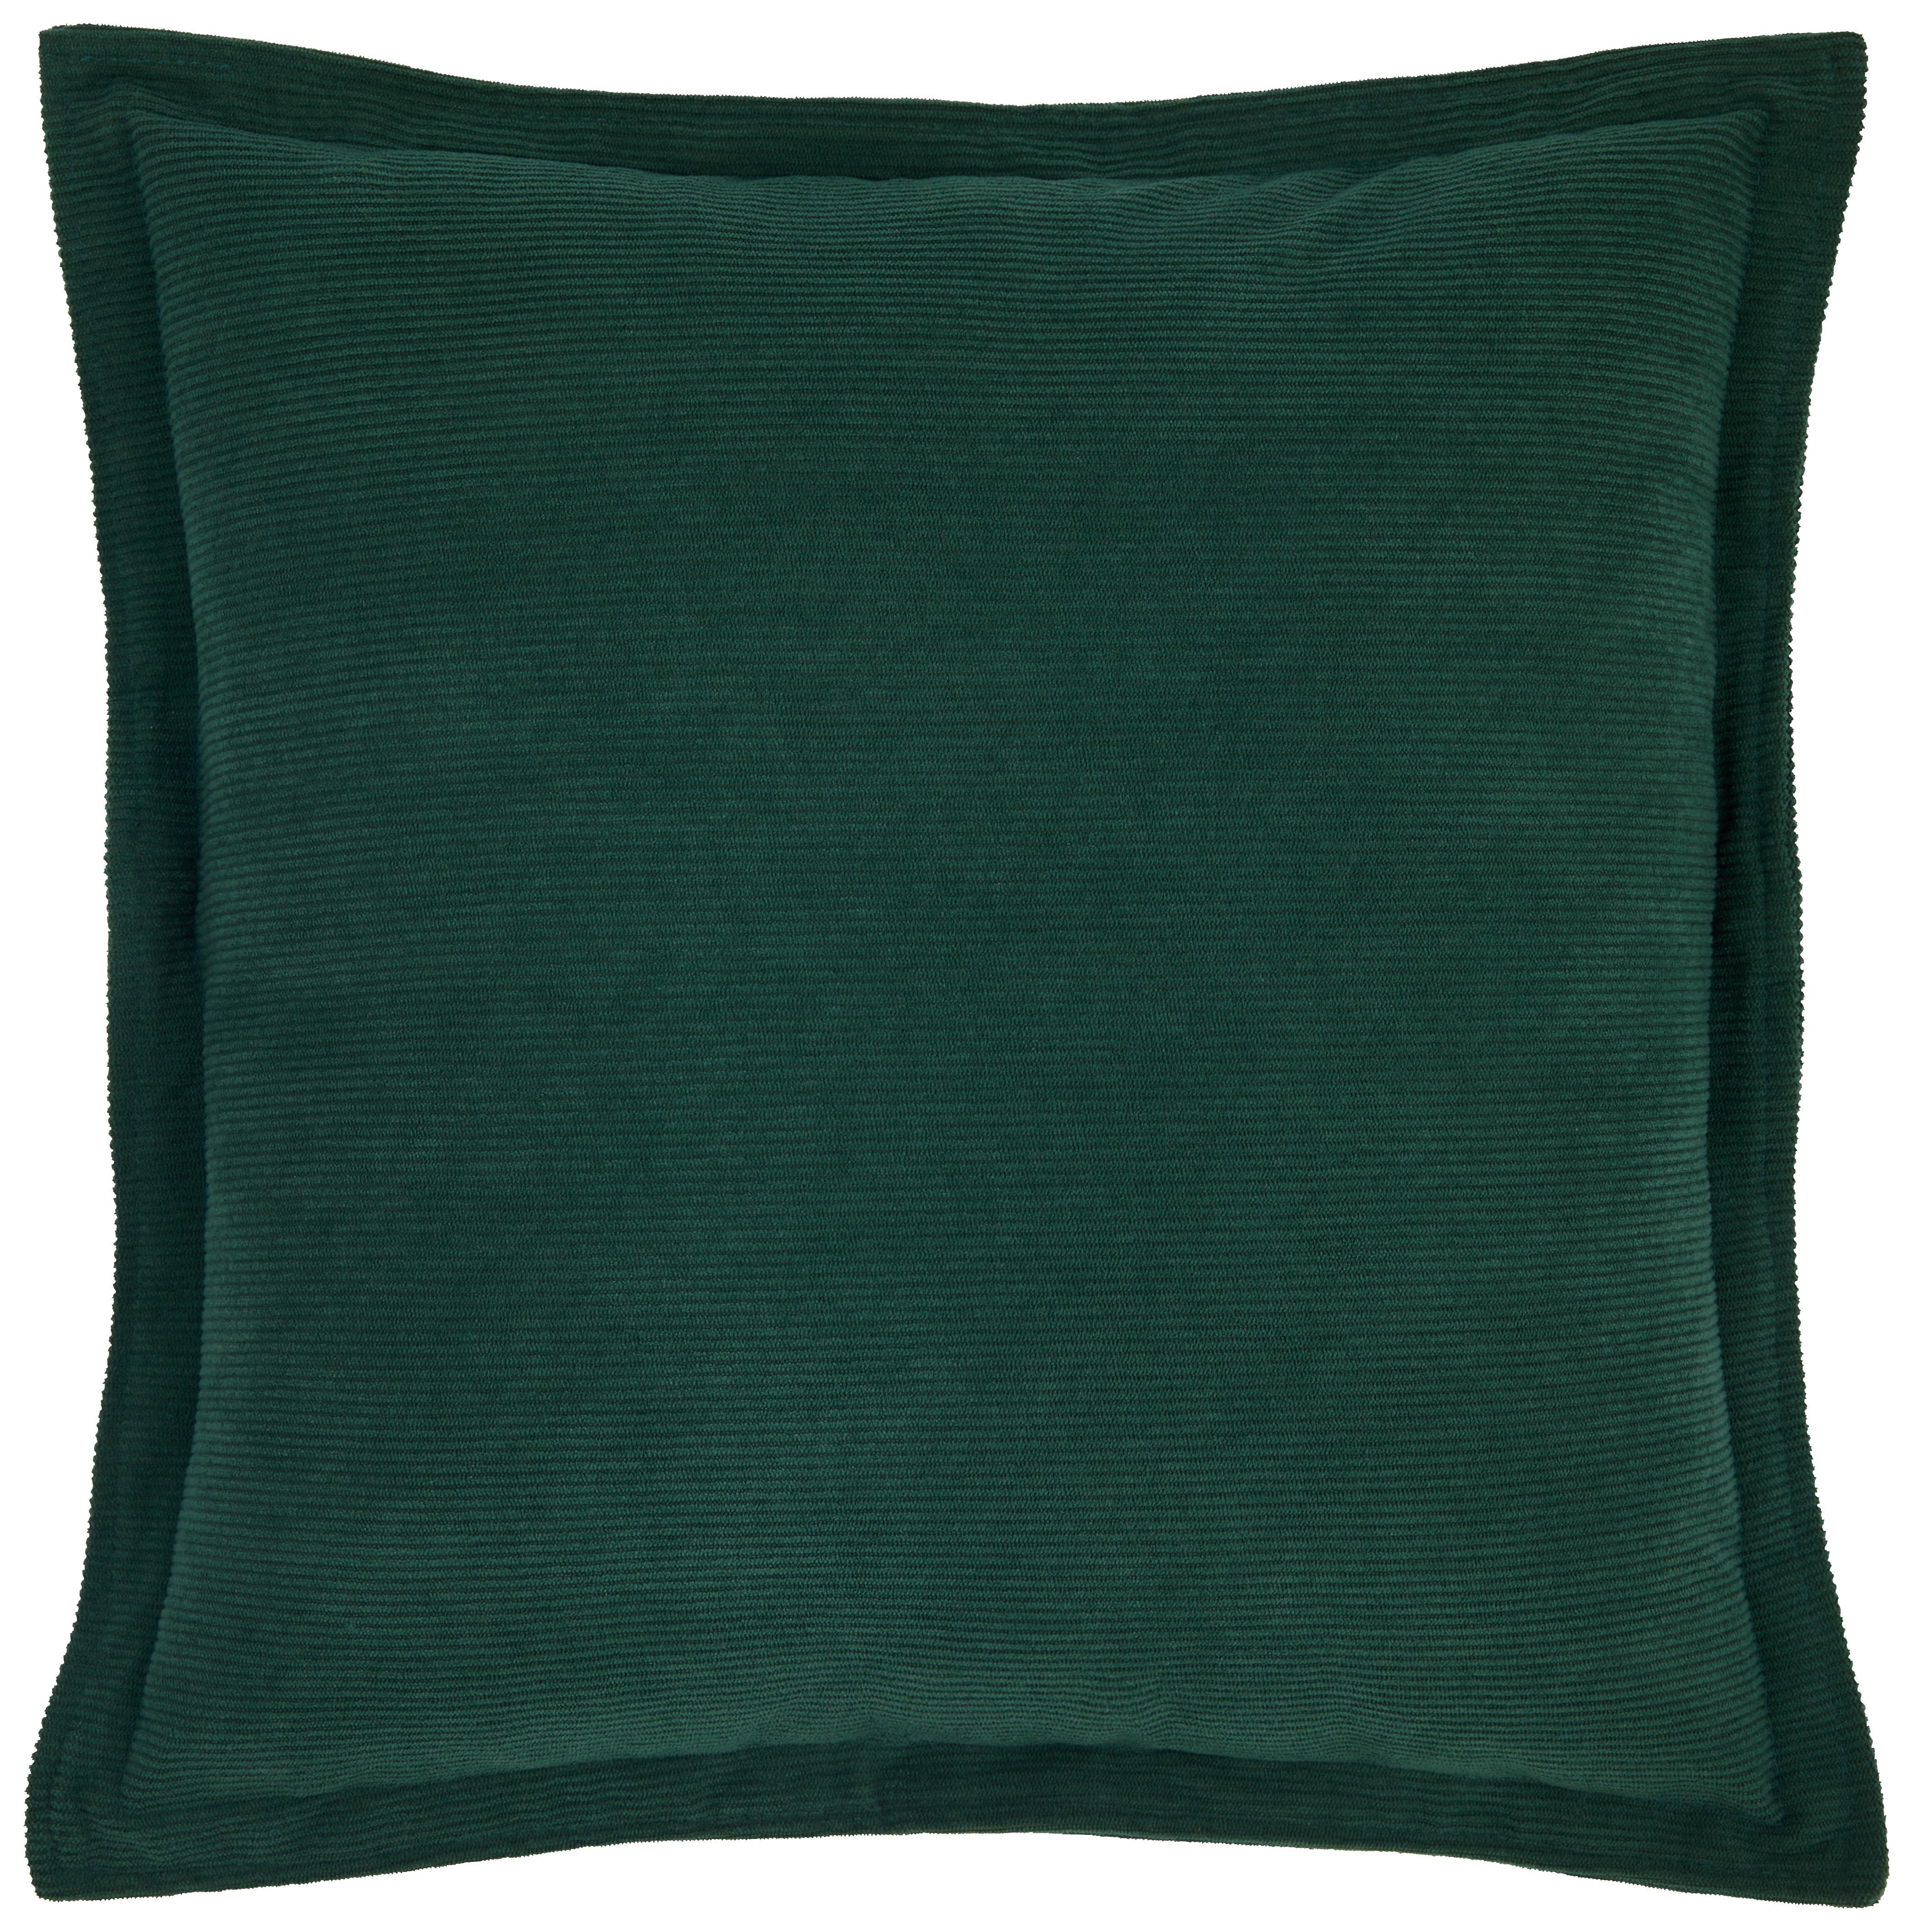 Zierkissen Maren 45x45 cm Polyester Grün mit Zipp - Grün, ROMANTIK / LANDHAUS, Textil (45/45cm) - James Wood